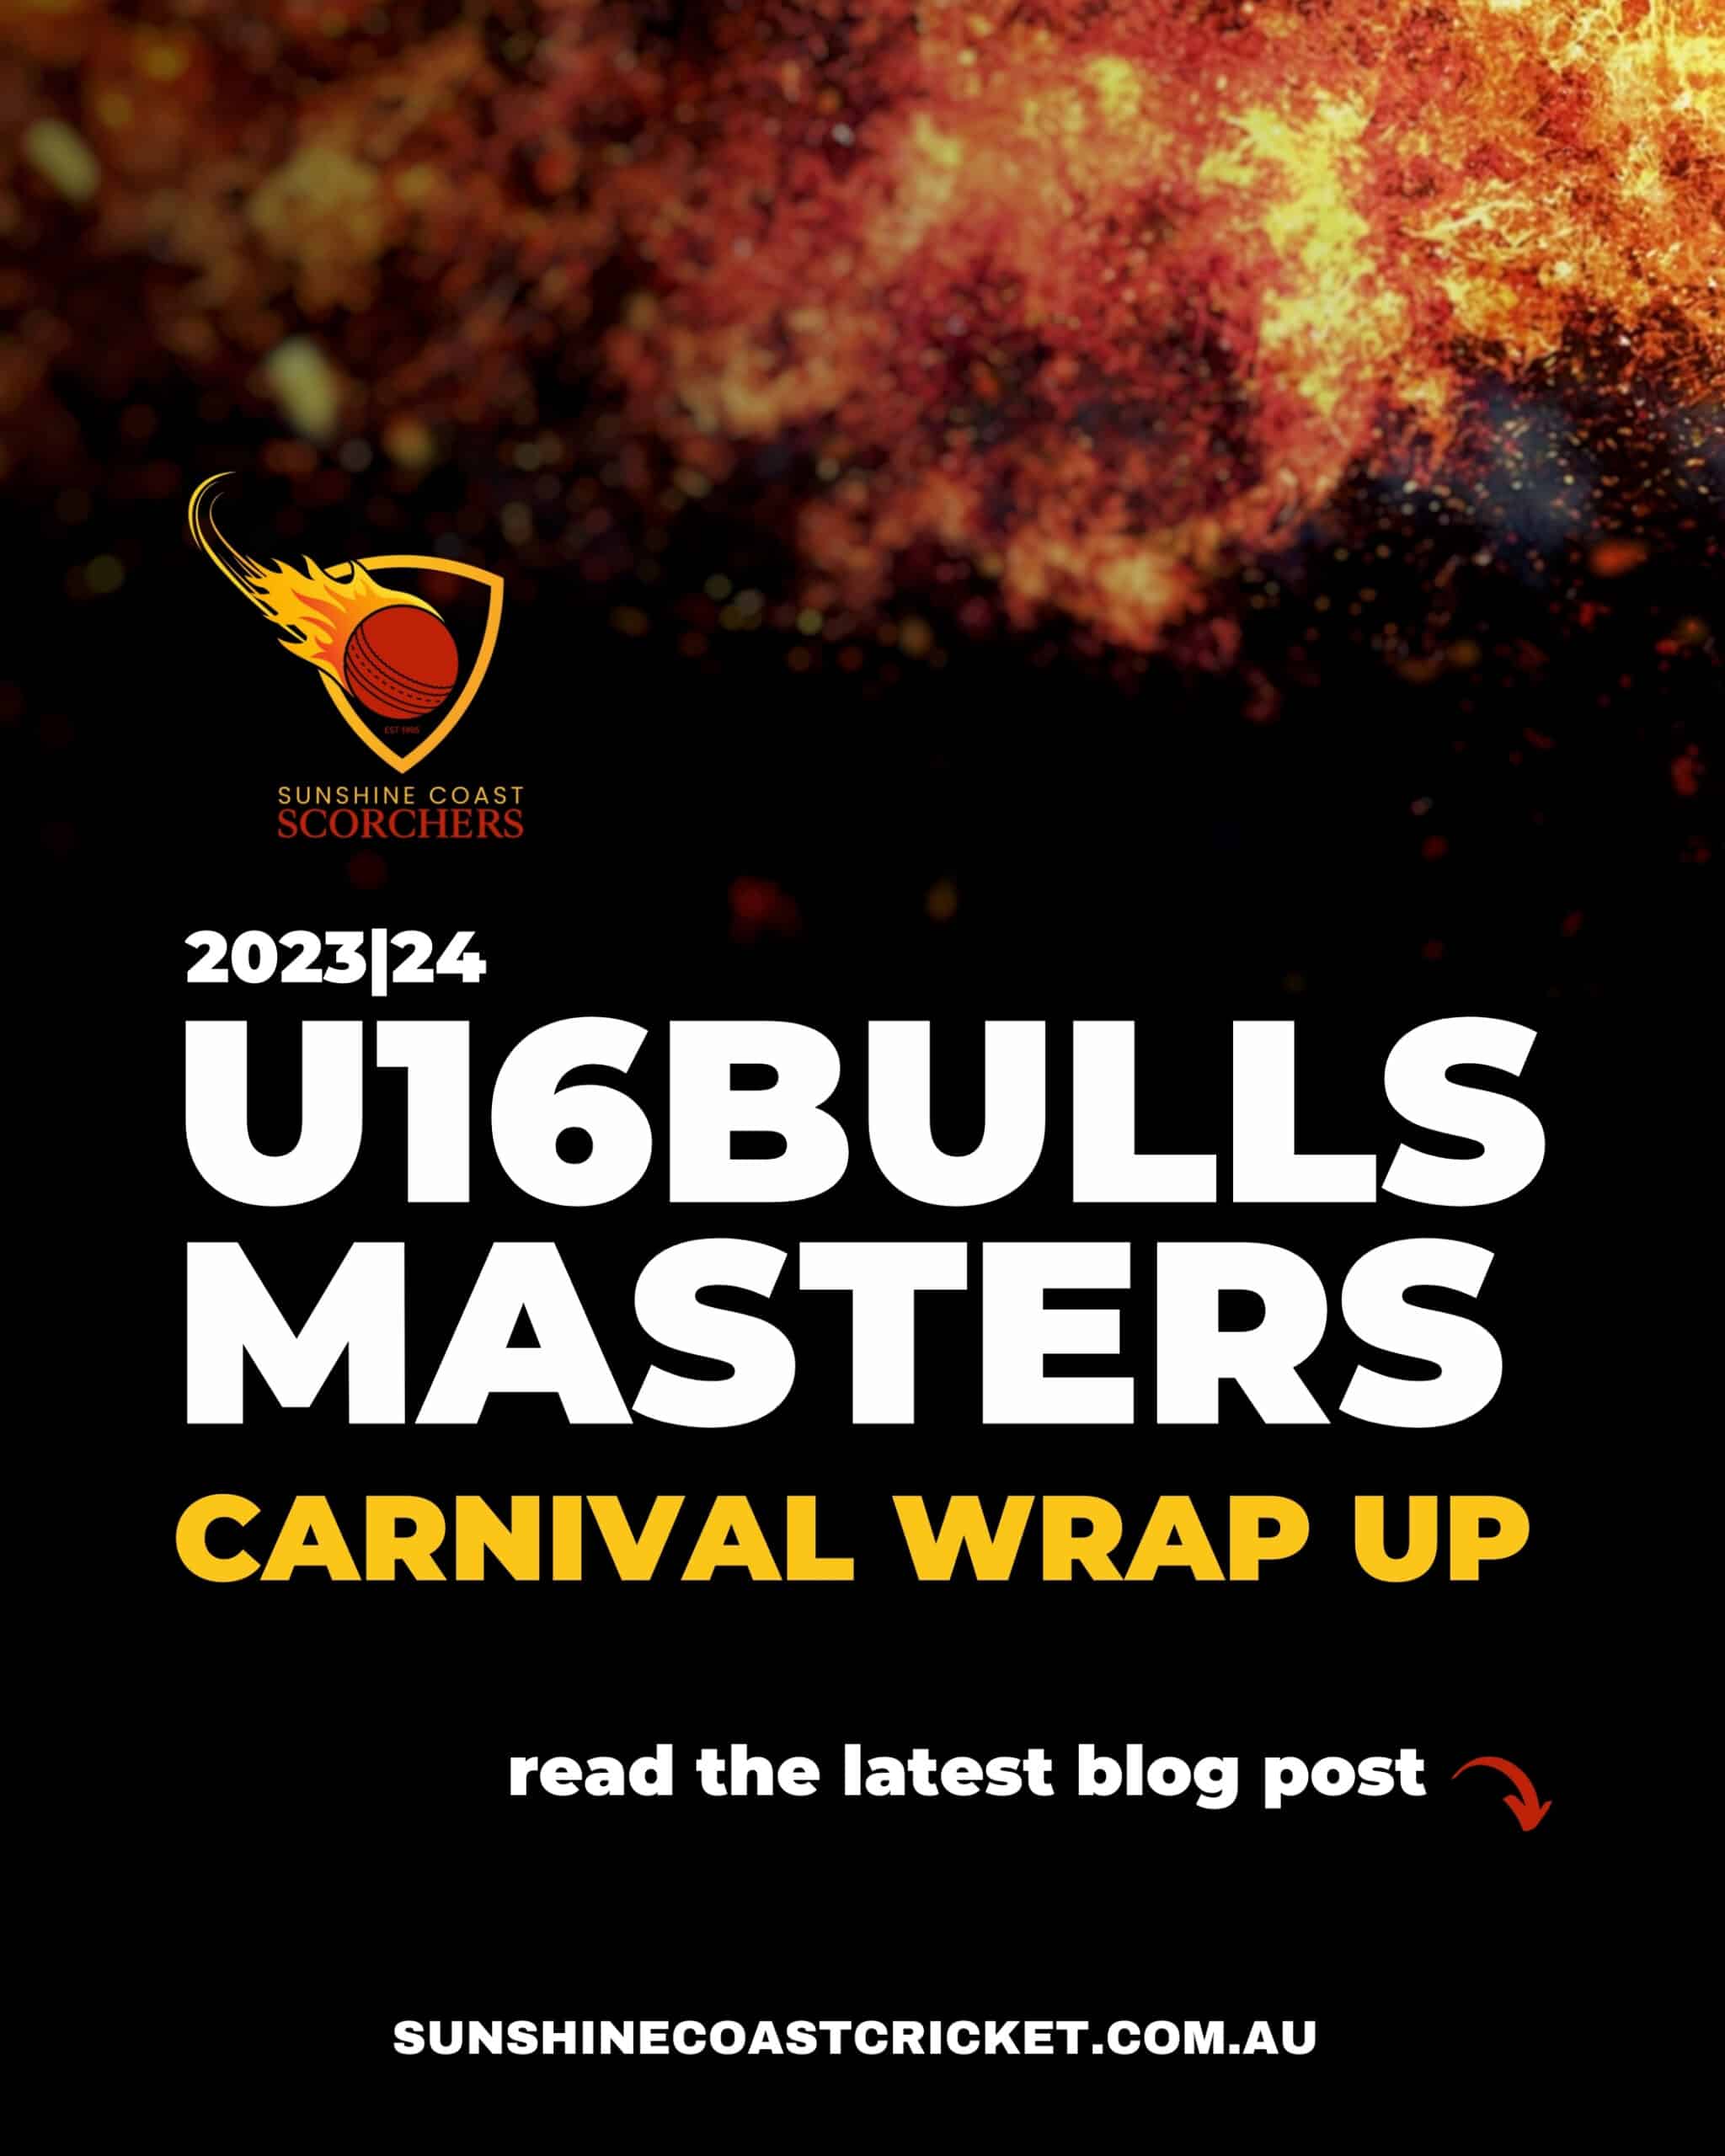 U16 bulls masters scaled